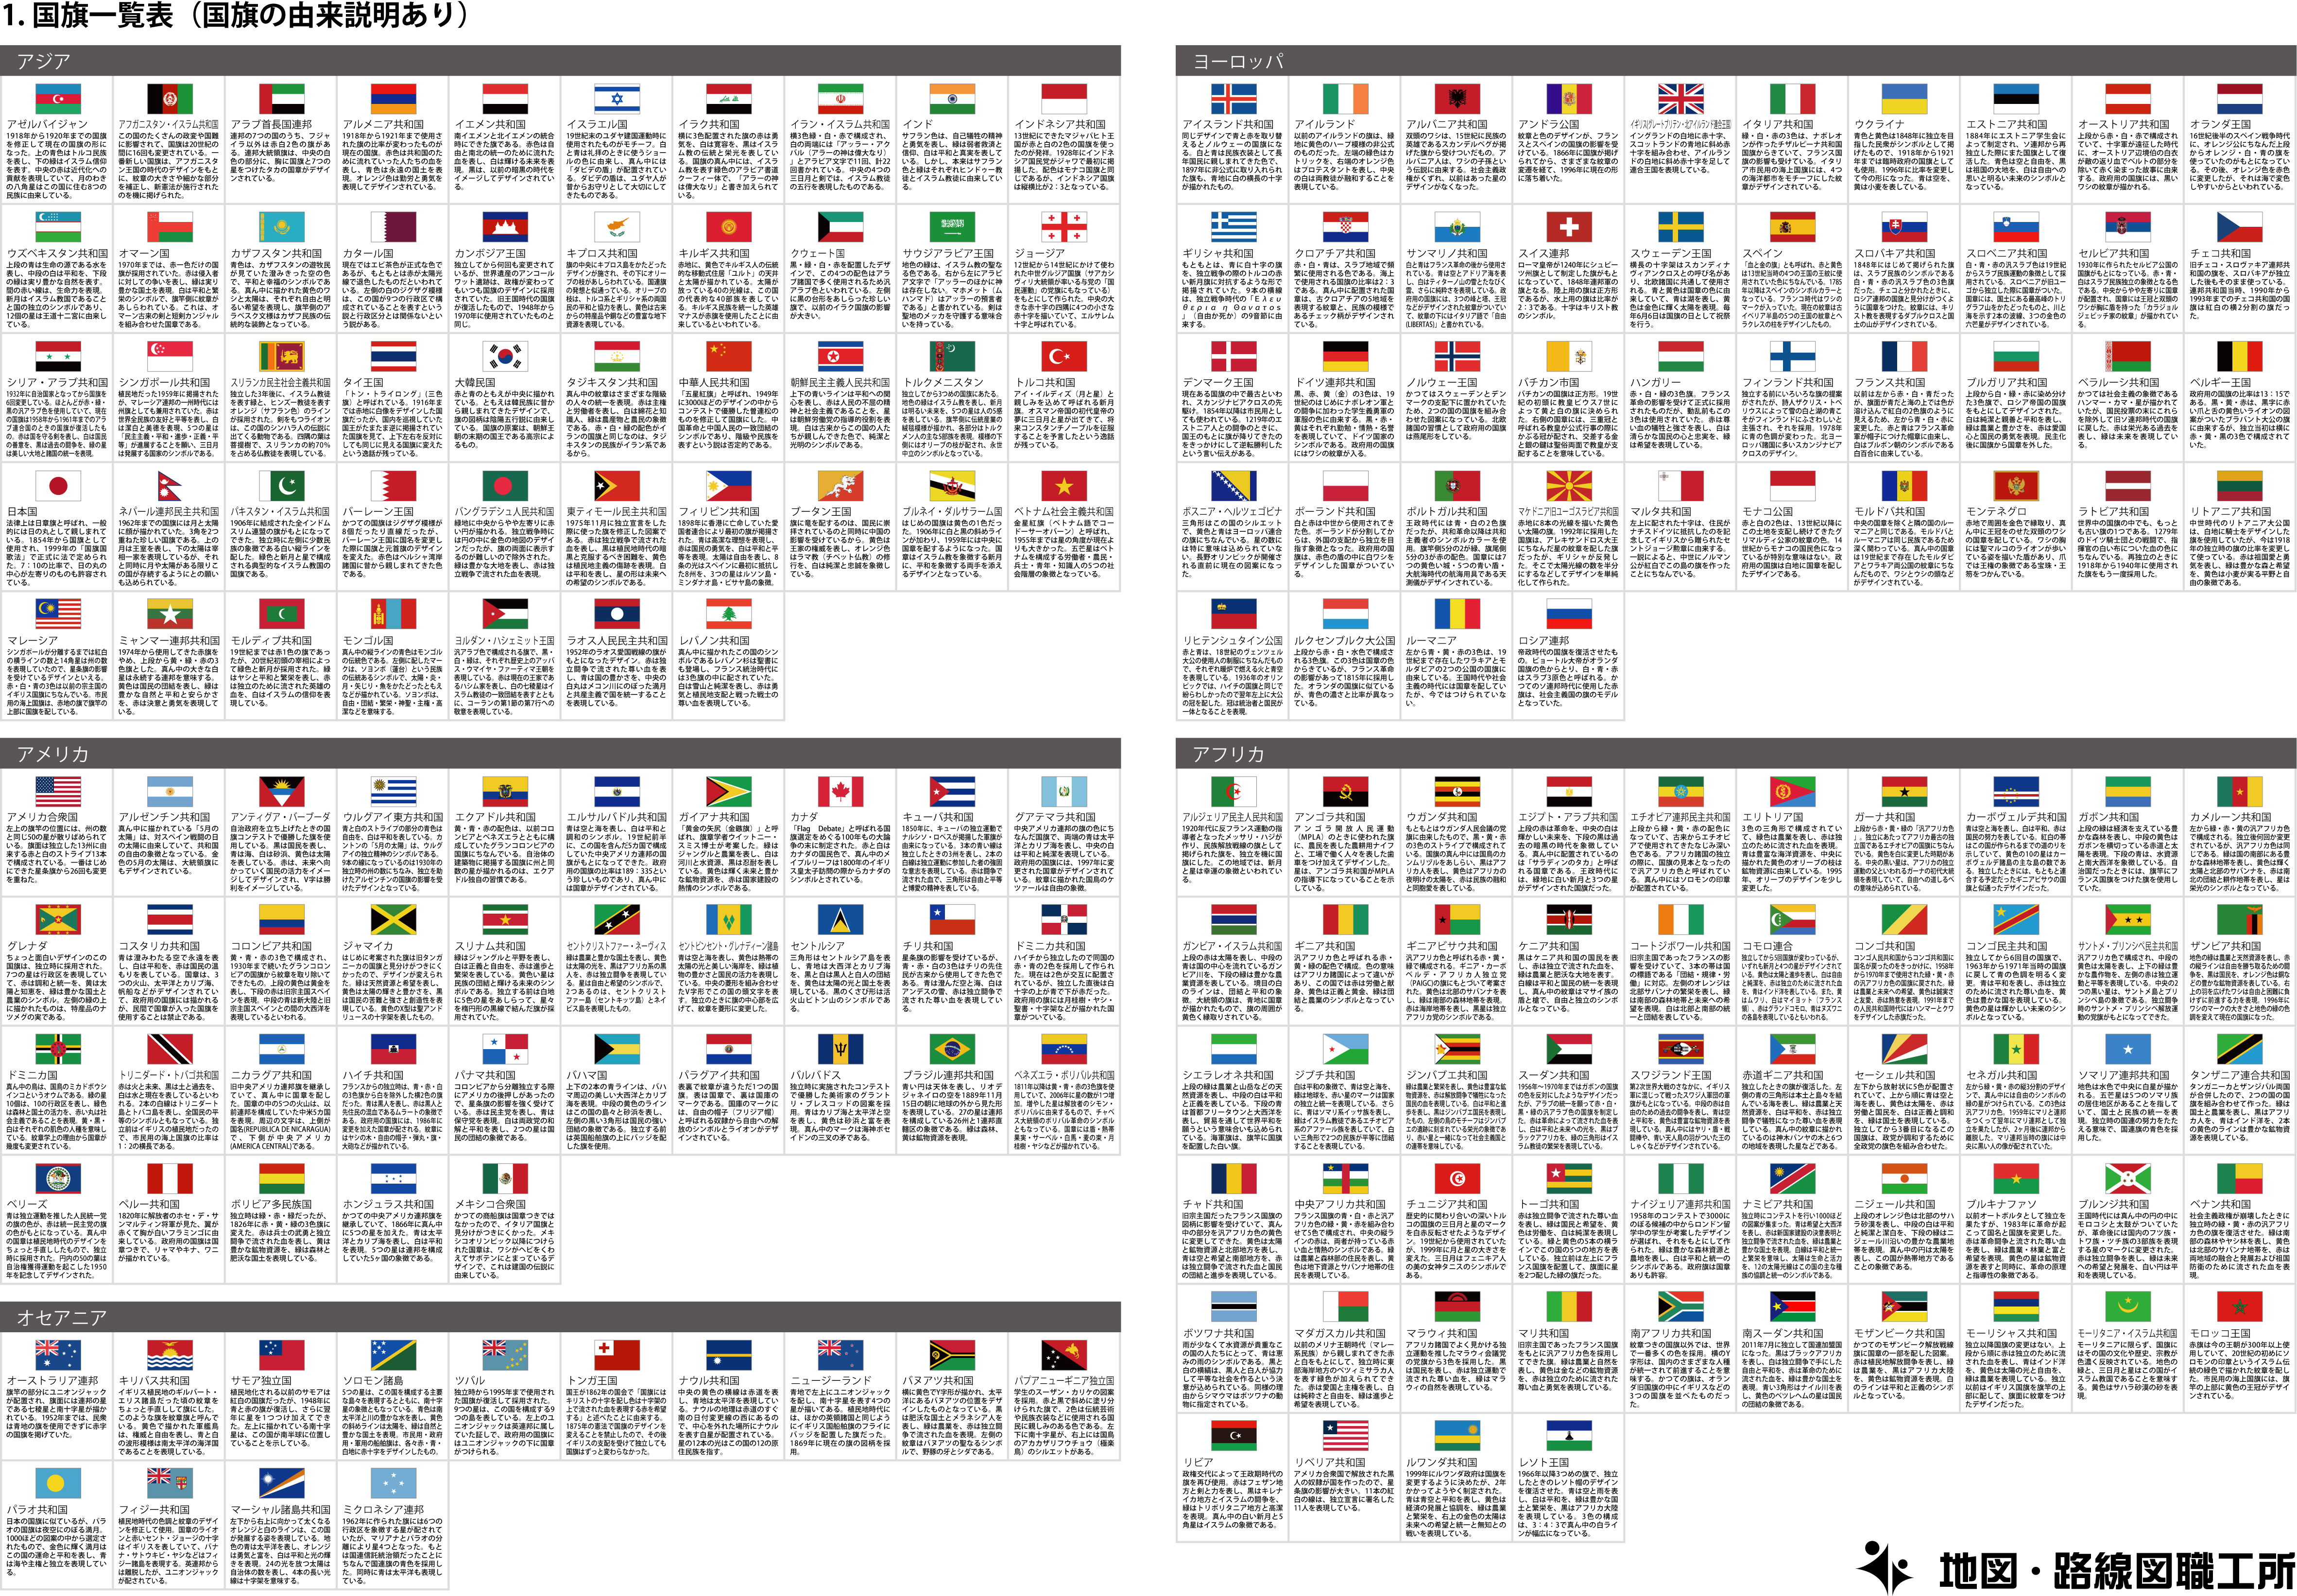 国旗一覧 クイズ 25種類以上印刷可 目指せ Flagマイスター